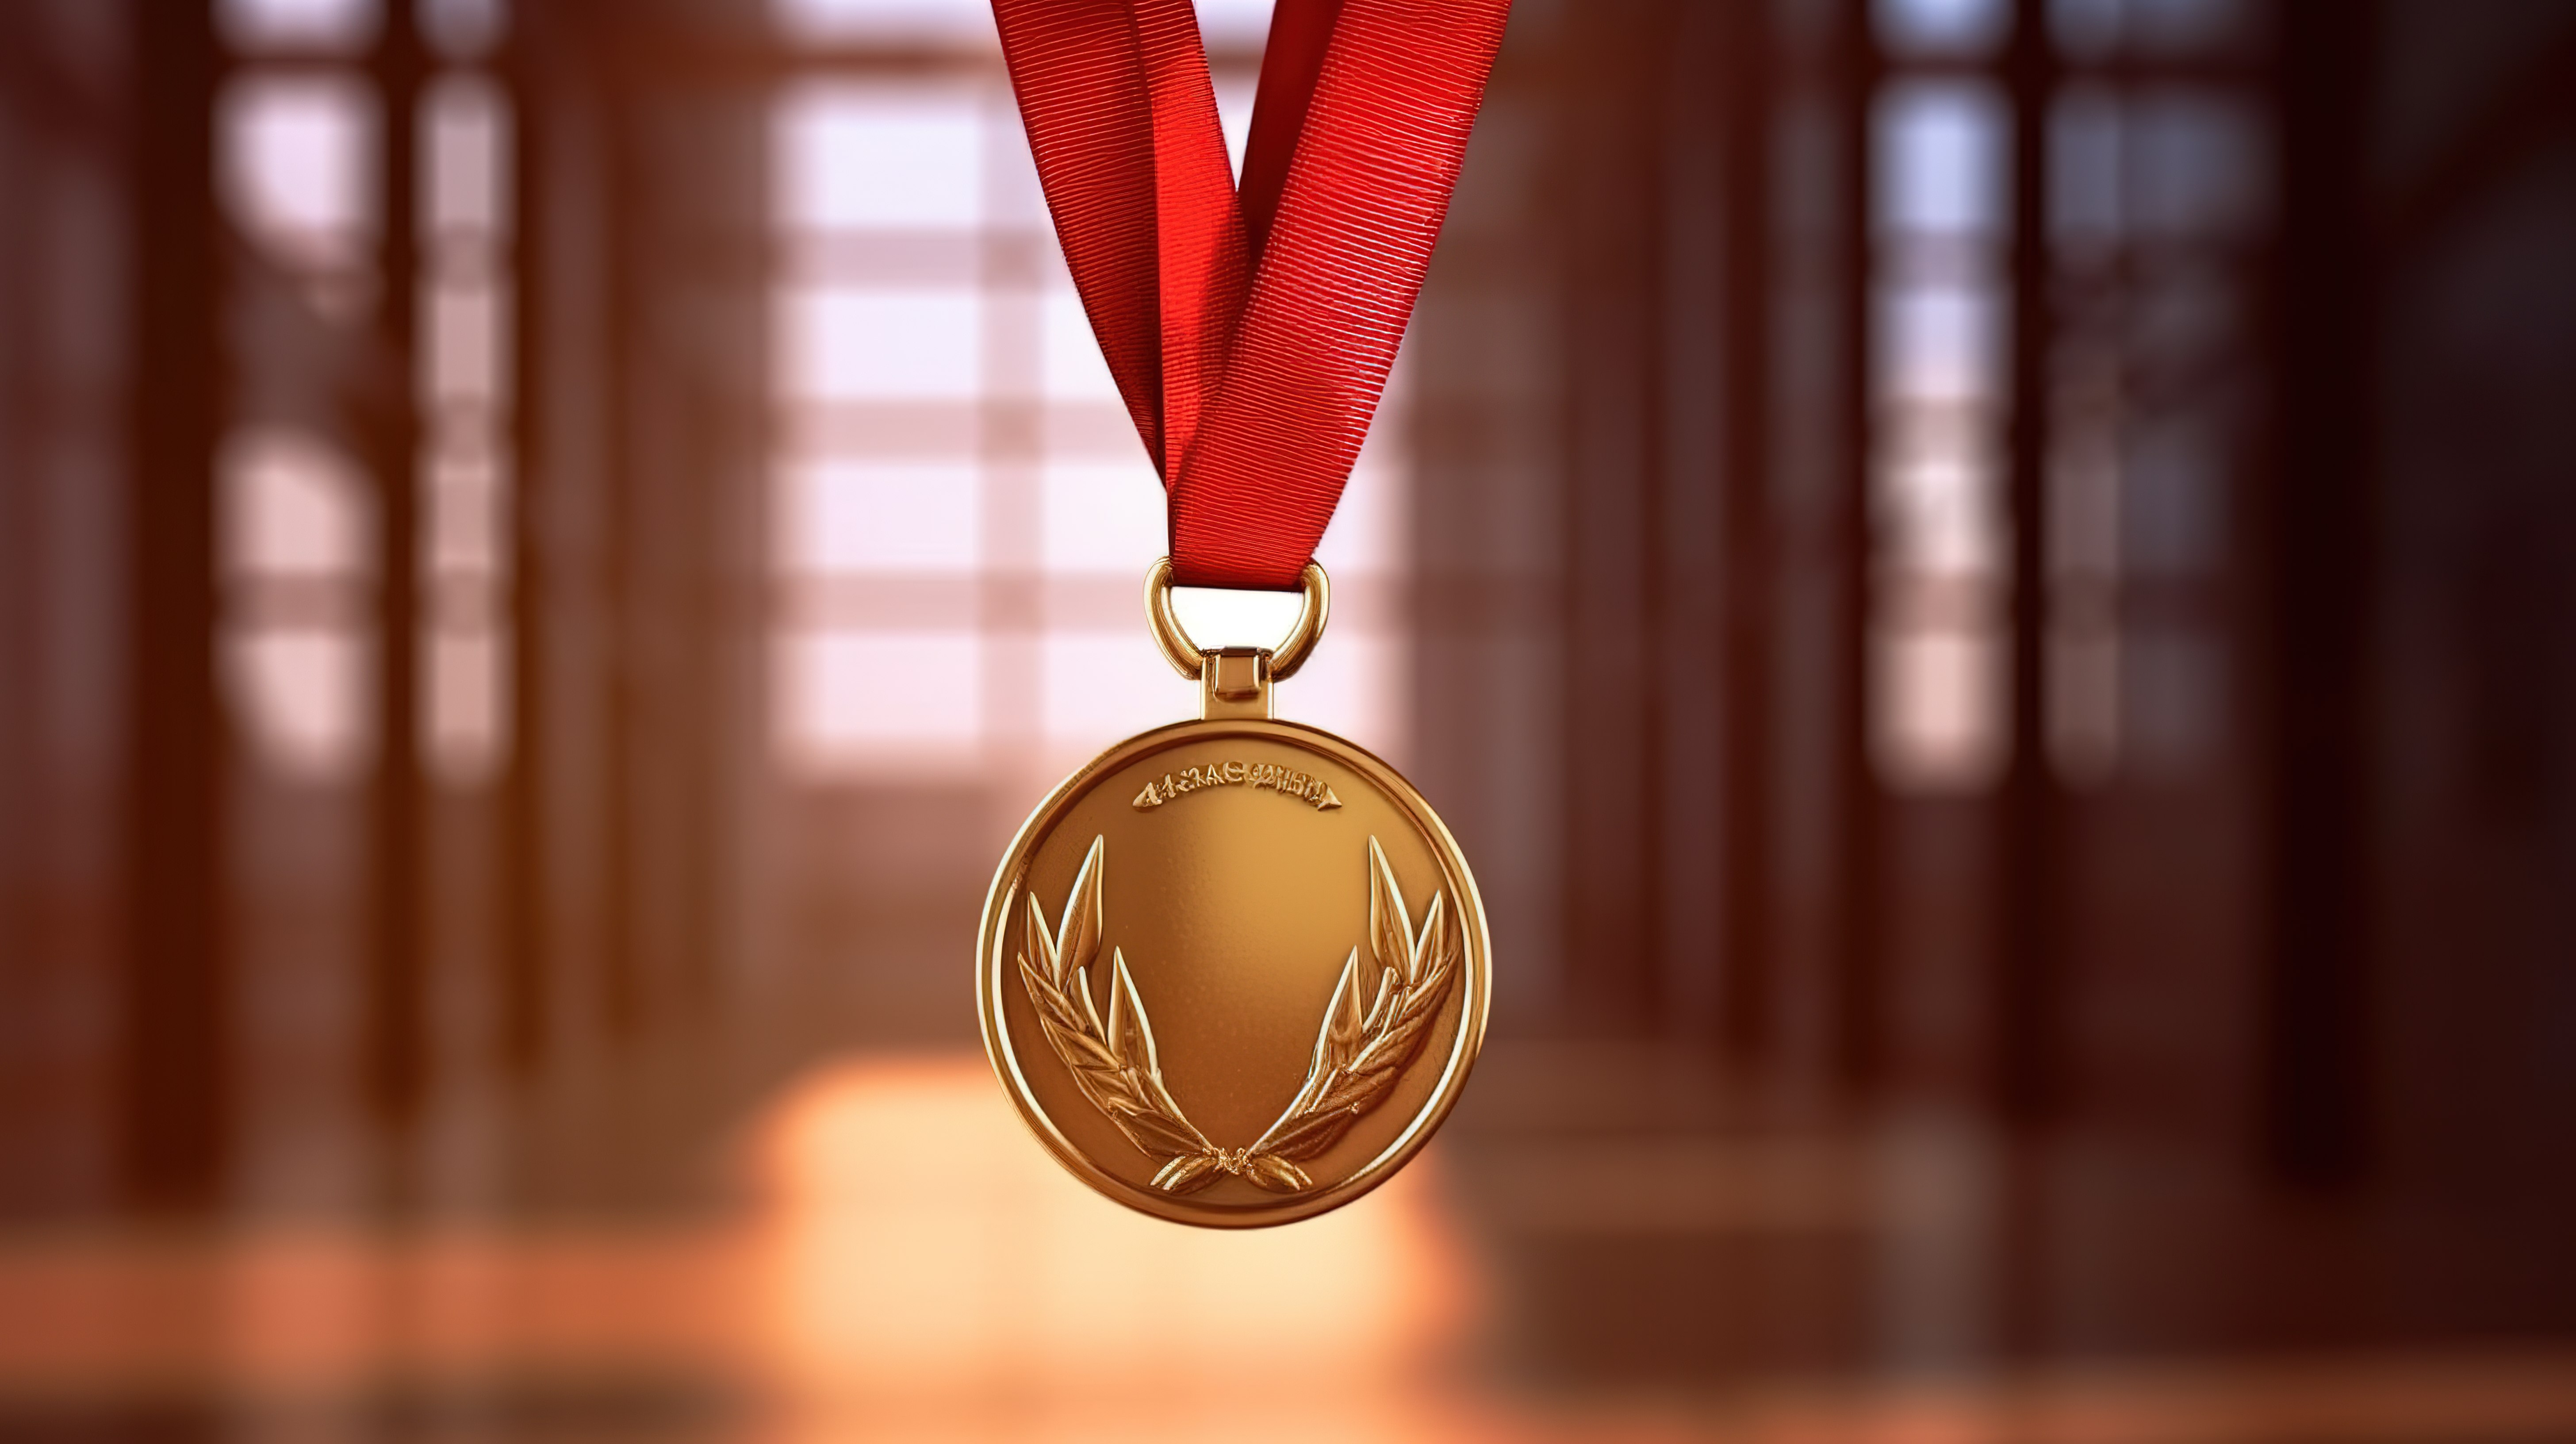 冠军的胜利 3D 渲染金牌和奖杯装饰运动员胸前象征着体育第一名的成就图片